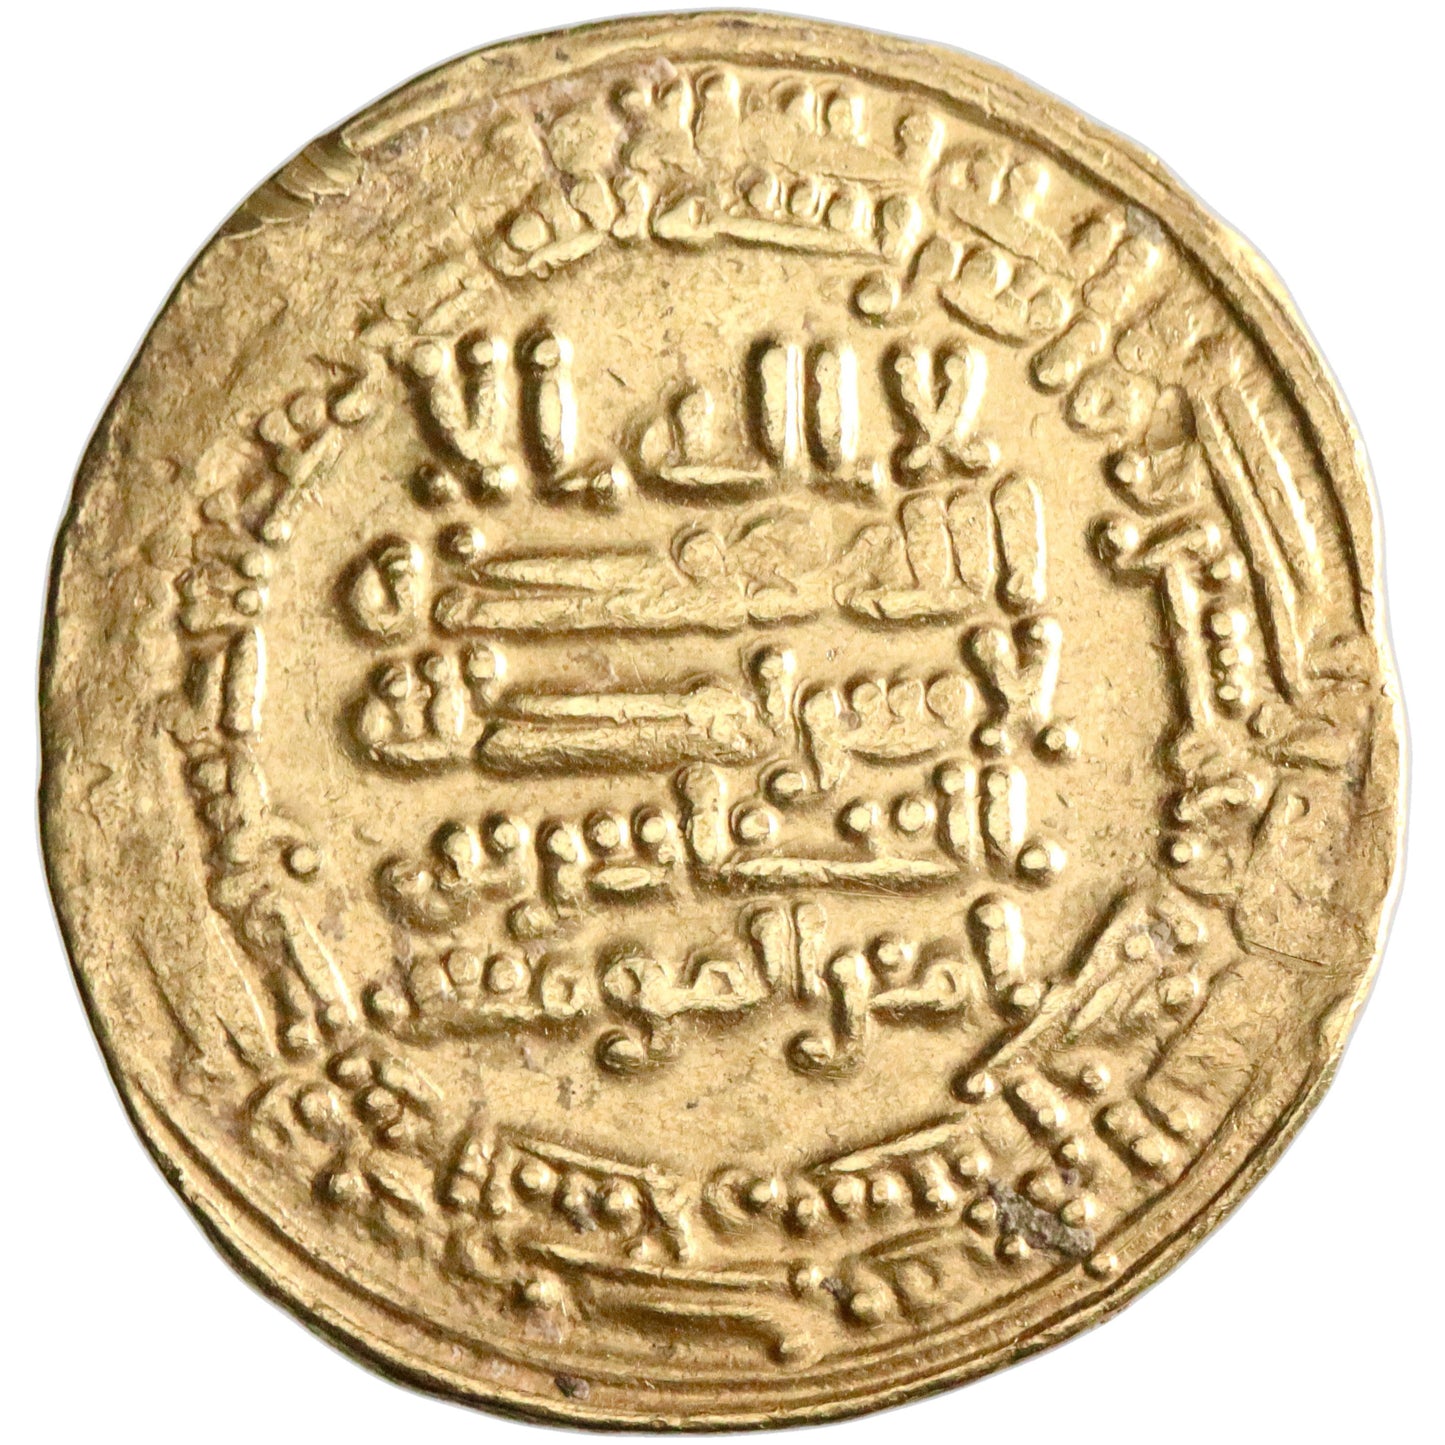 Abbasid, al-Musta'in, gold dinar, Madinat al-Salam (Baghdad) mint, AH 251, citing al-'Abbas